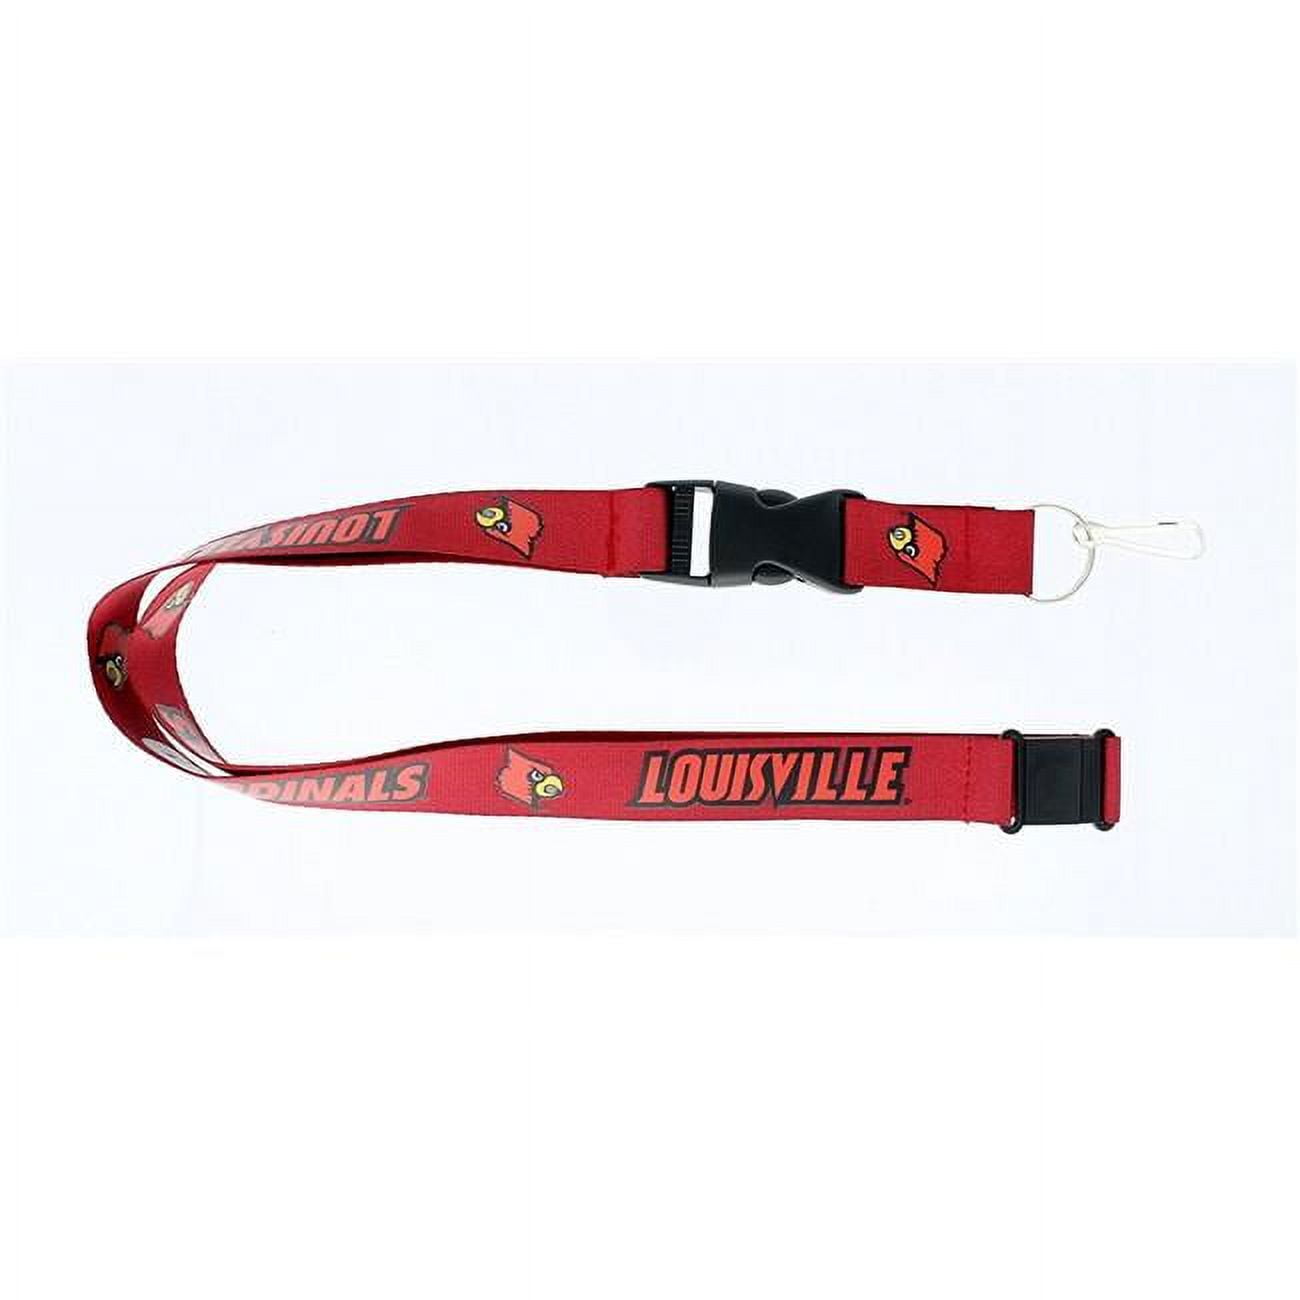 Louisville Cardinals Lanyard Key Strap 1